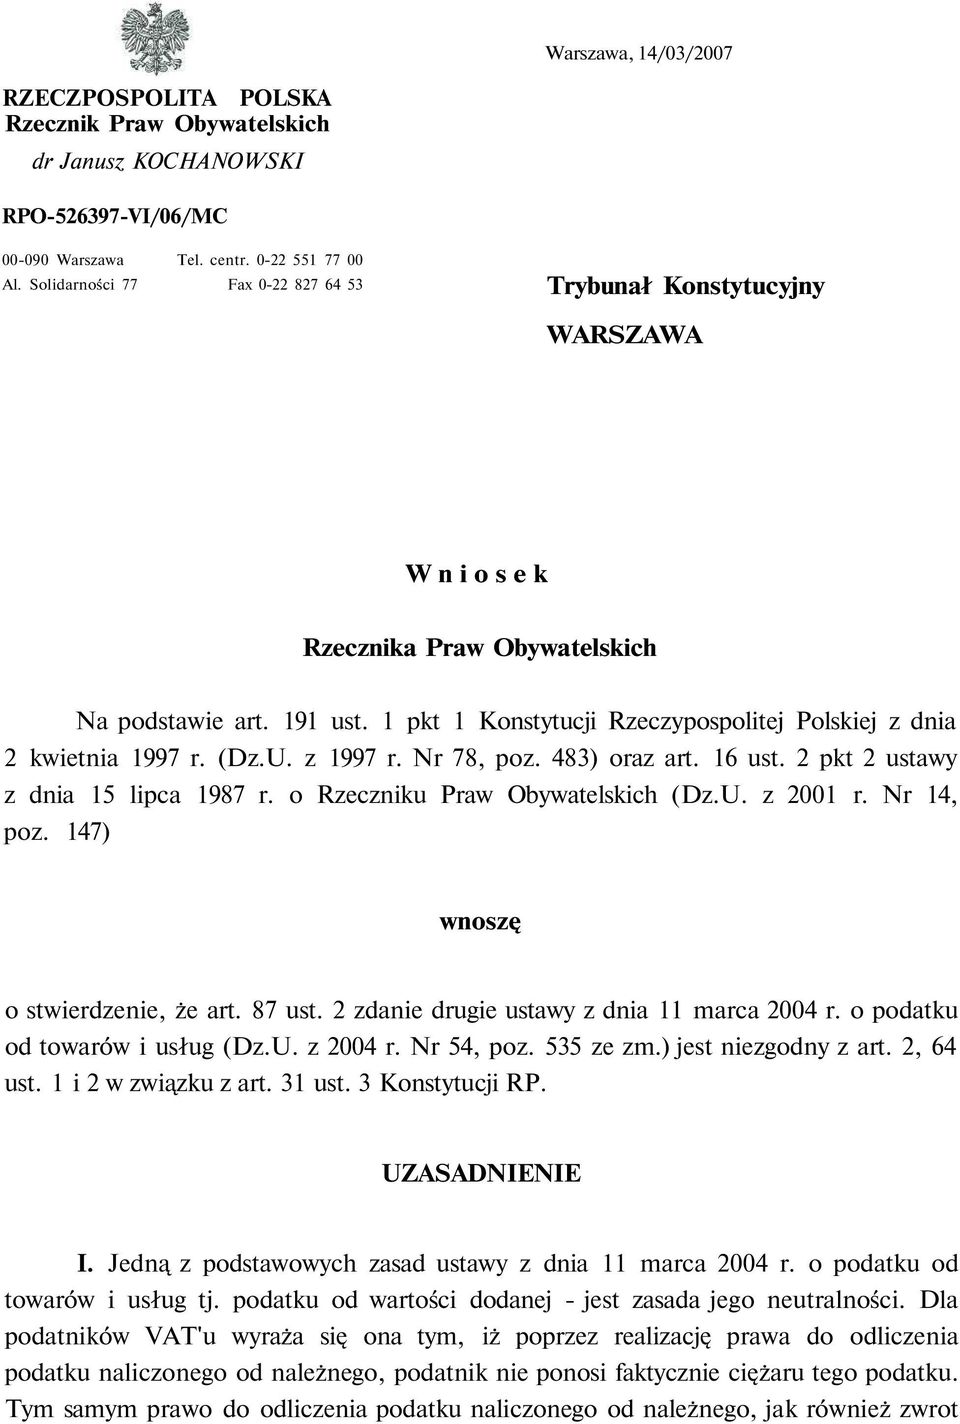 1 pkt 1 Konstytucji Rzeczypospolitej Polskiej z dnia 2 kwietnia 1997 r. (Dz.U. z 1997 r. Nr 78, poz. 483) oraz art. 16 ust. 2 pkt 2 ustawy z dnia 15 lipca 1987 r. o Rzeczniku Praw Obywatelskich (Dz.U. z 2001 r.